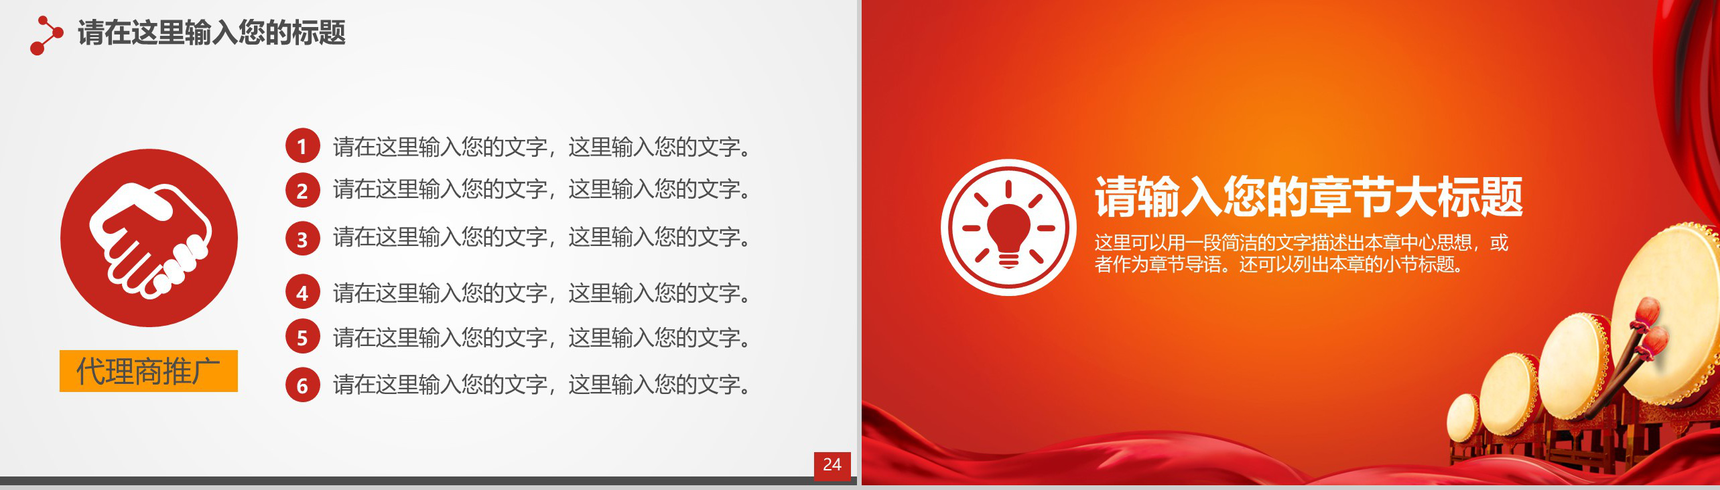 喜庆中国风企业签约仪式PPT模板-13